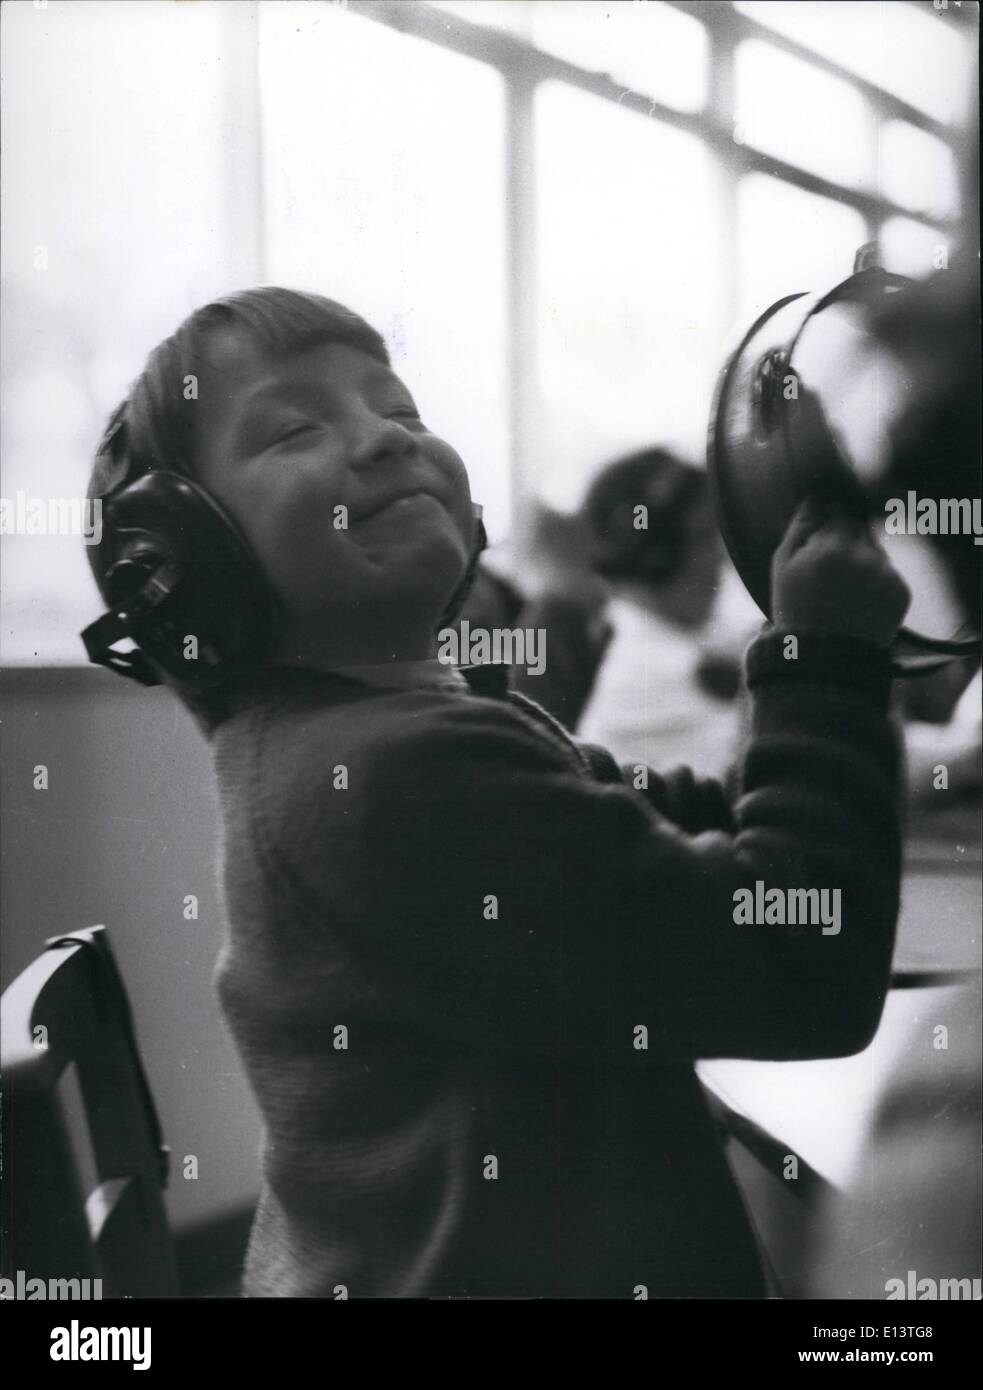 27 mars 2012 - Pure Bliss pour cette jeune Mademoiselle elle peut entendre la musique : huit ans Anita Taylor, de l'audition de la musique à partir d'un enregistrement sur son oreille un téléphone, sièges sur les barres avec un Tamborine. Peu d'Anita est un des plus beaux Smilingest les filles dans l'école. Banque D'Images